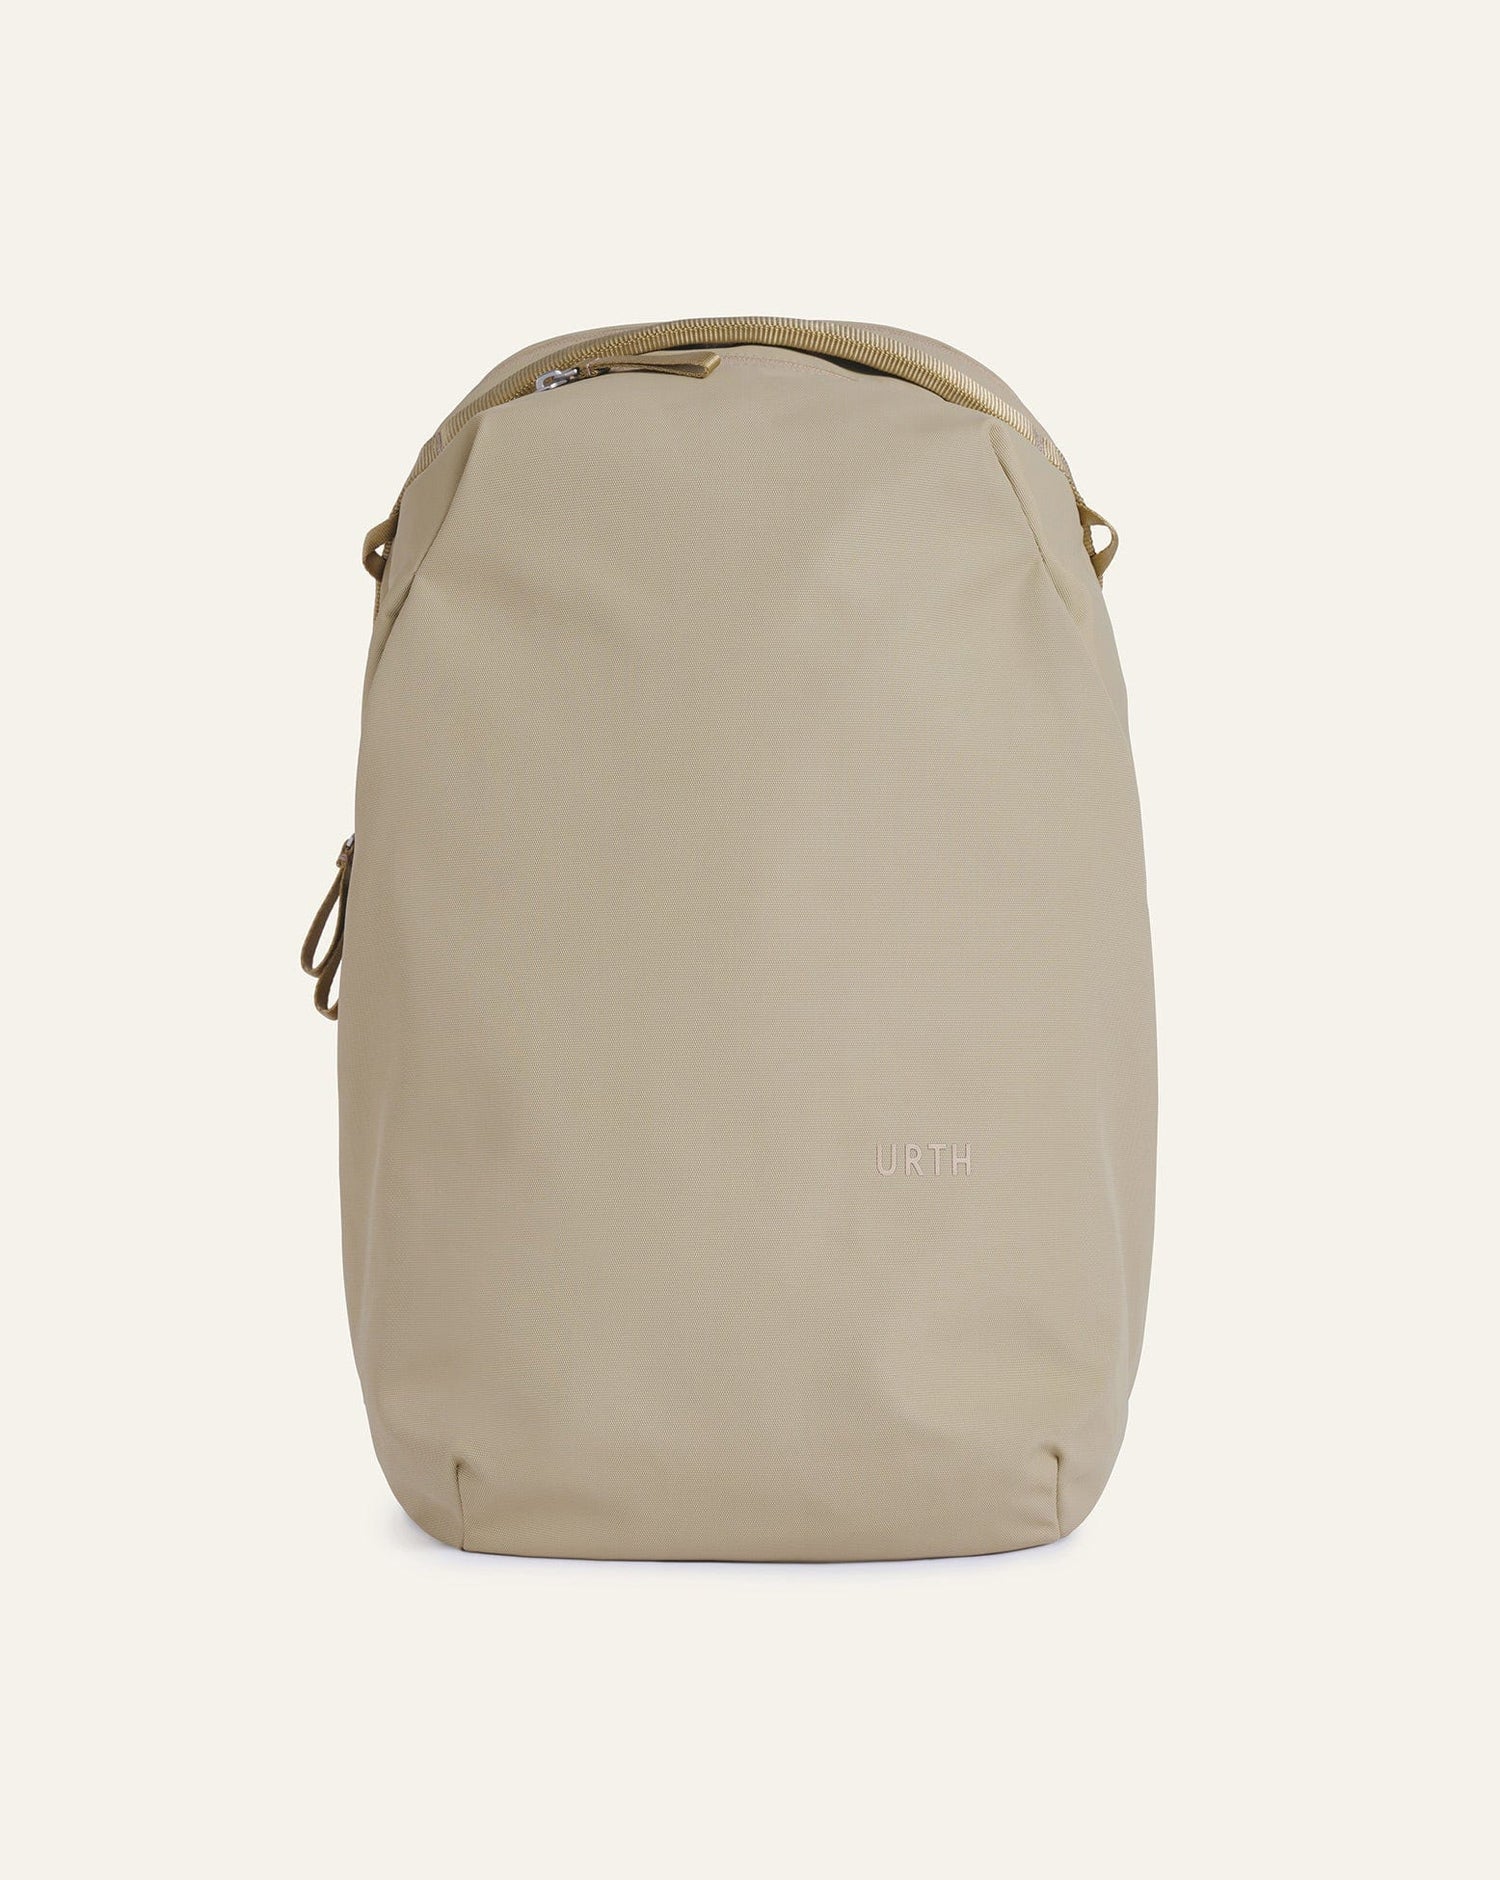 Custom Urth Norite Backpack